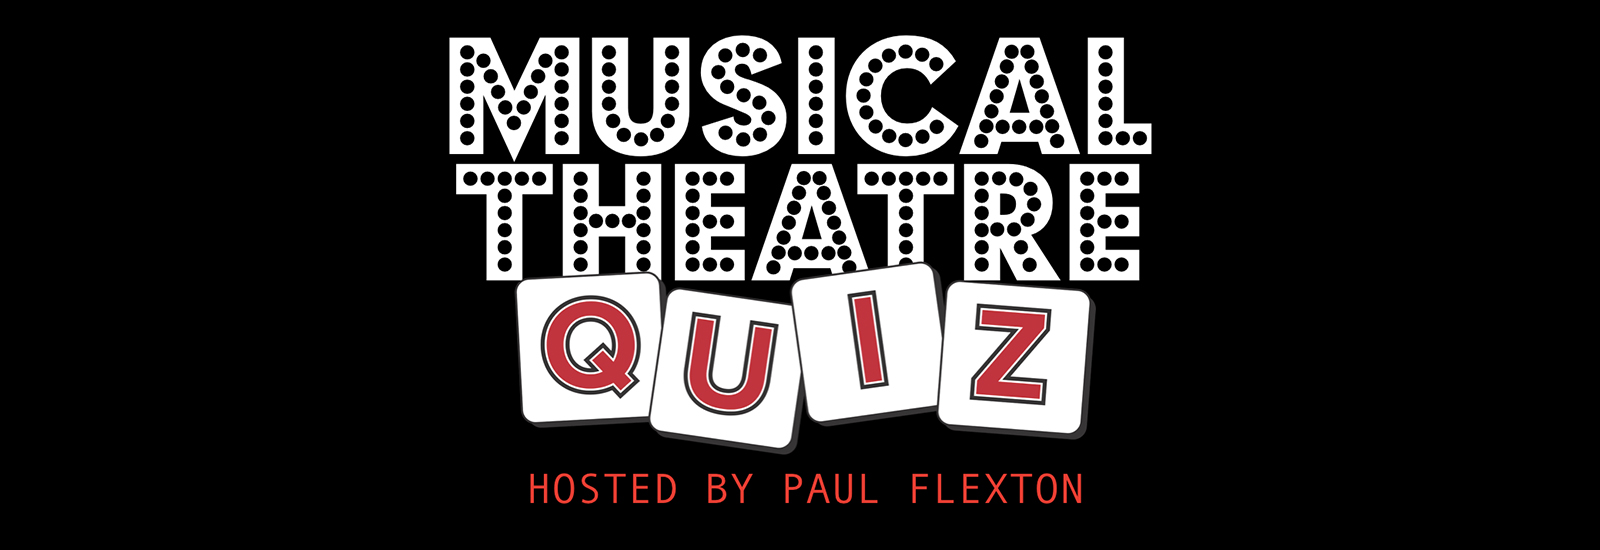 Musical theatre quiz logo